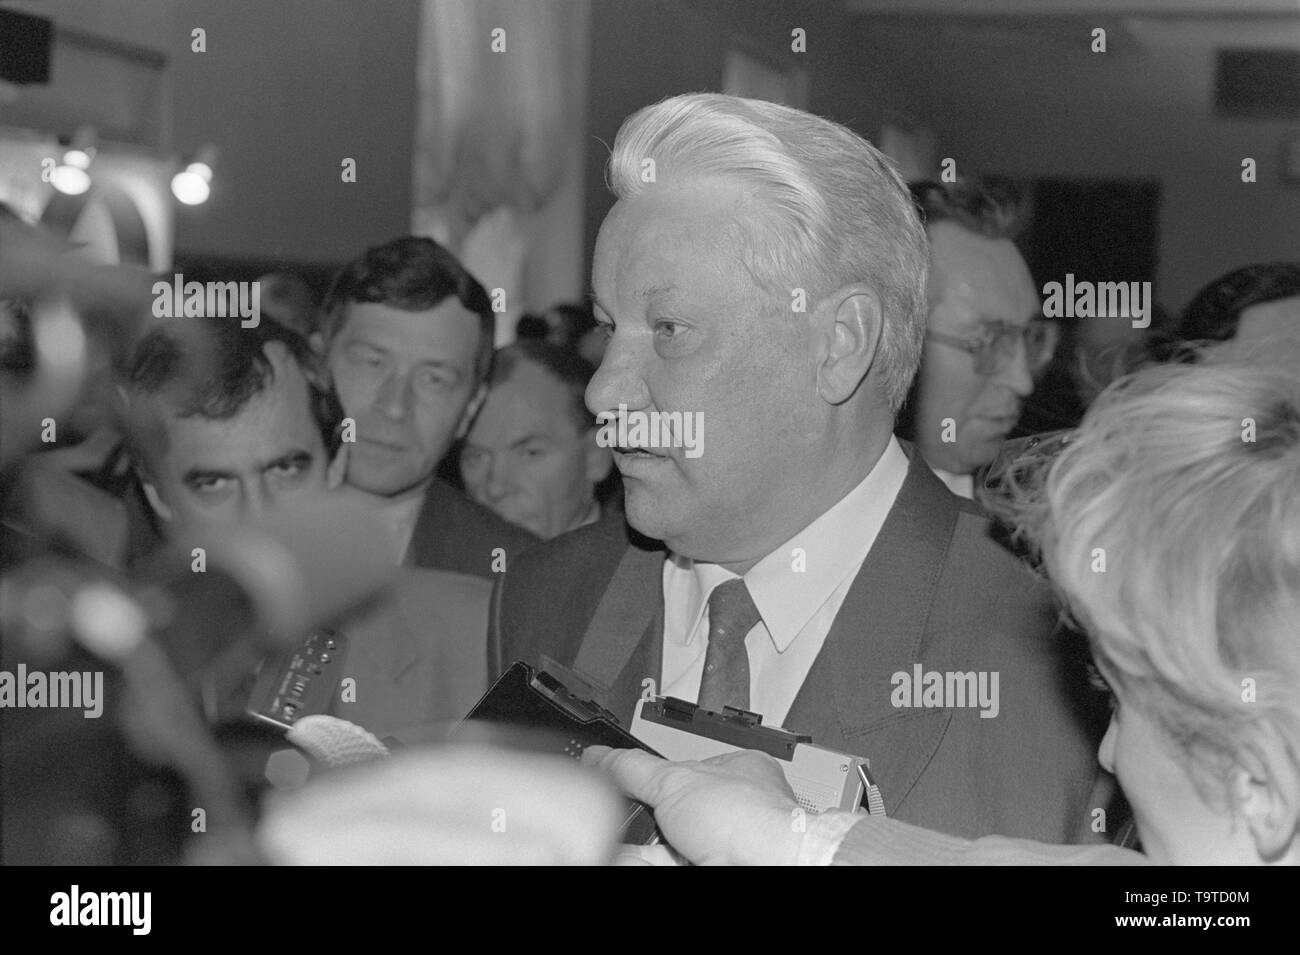 Moscou, Russie - le 28 mars 1991 : Le Président du Présidium du Soviet suprême de la RSFSR Boris Nikolaïevitch Eltsine parle aux correspondants en 3D au congrès extraordinaire des députés du peuple de la RSFSR. Banque D'Images